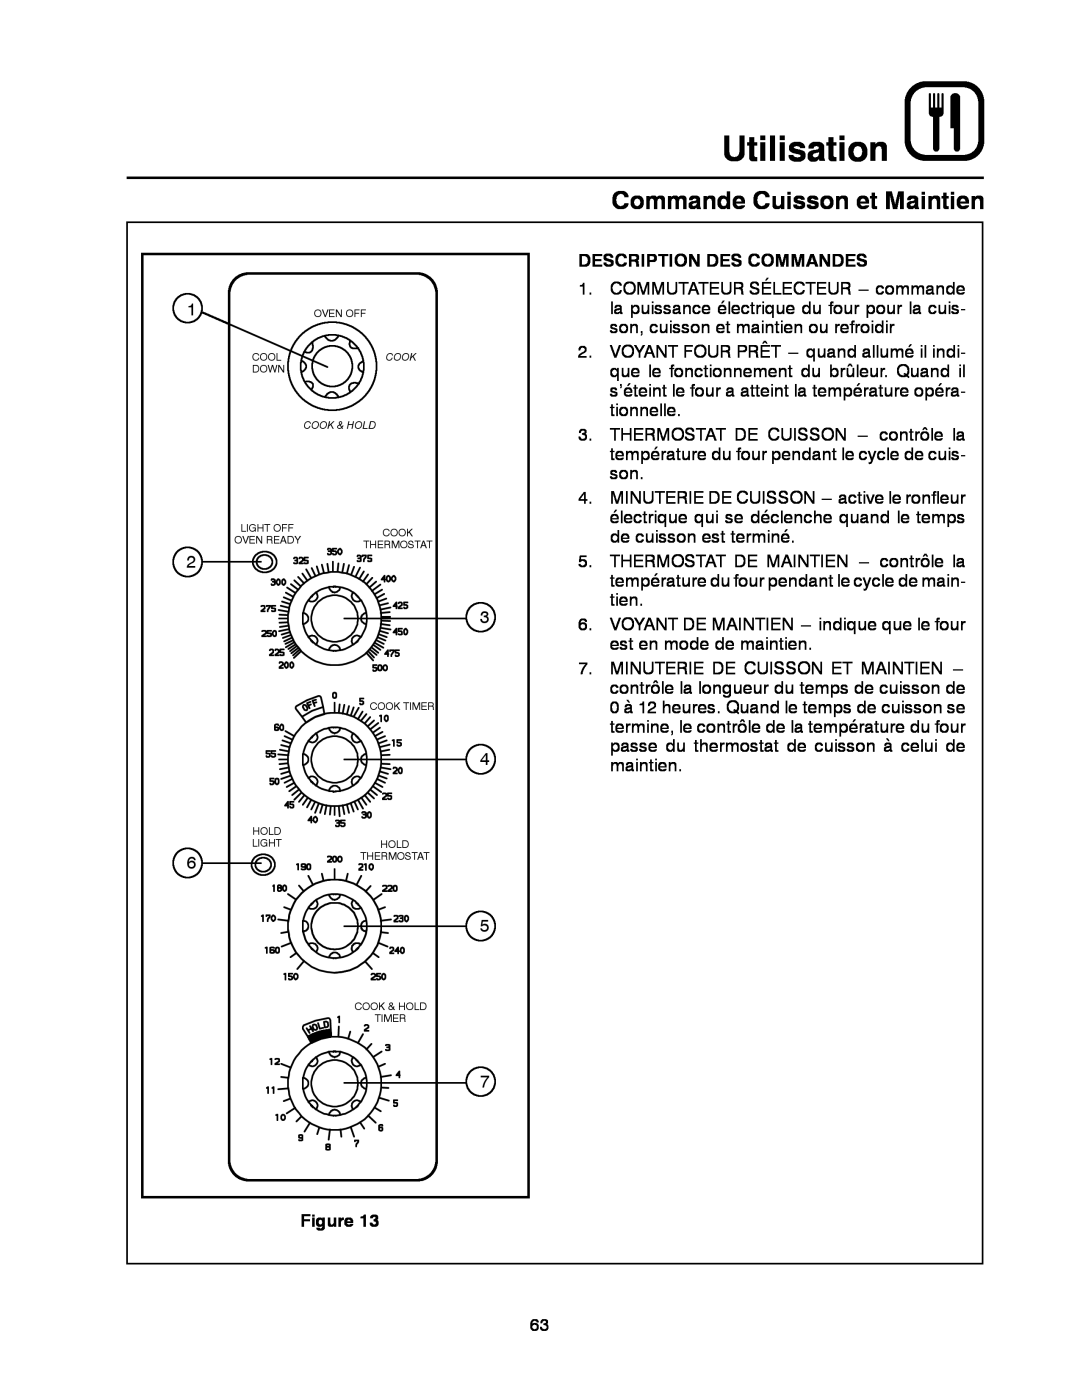 Blodgett DFG-50 manual Commande Cuisson et Maintien, Utilisation, Description Des Commandes 